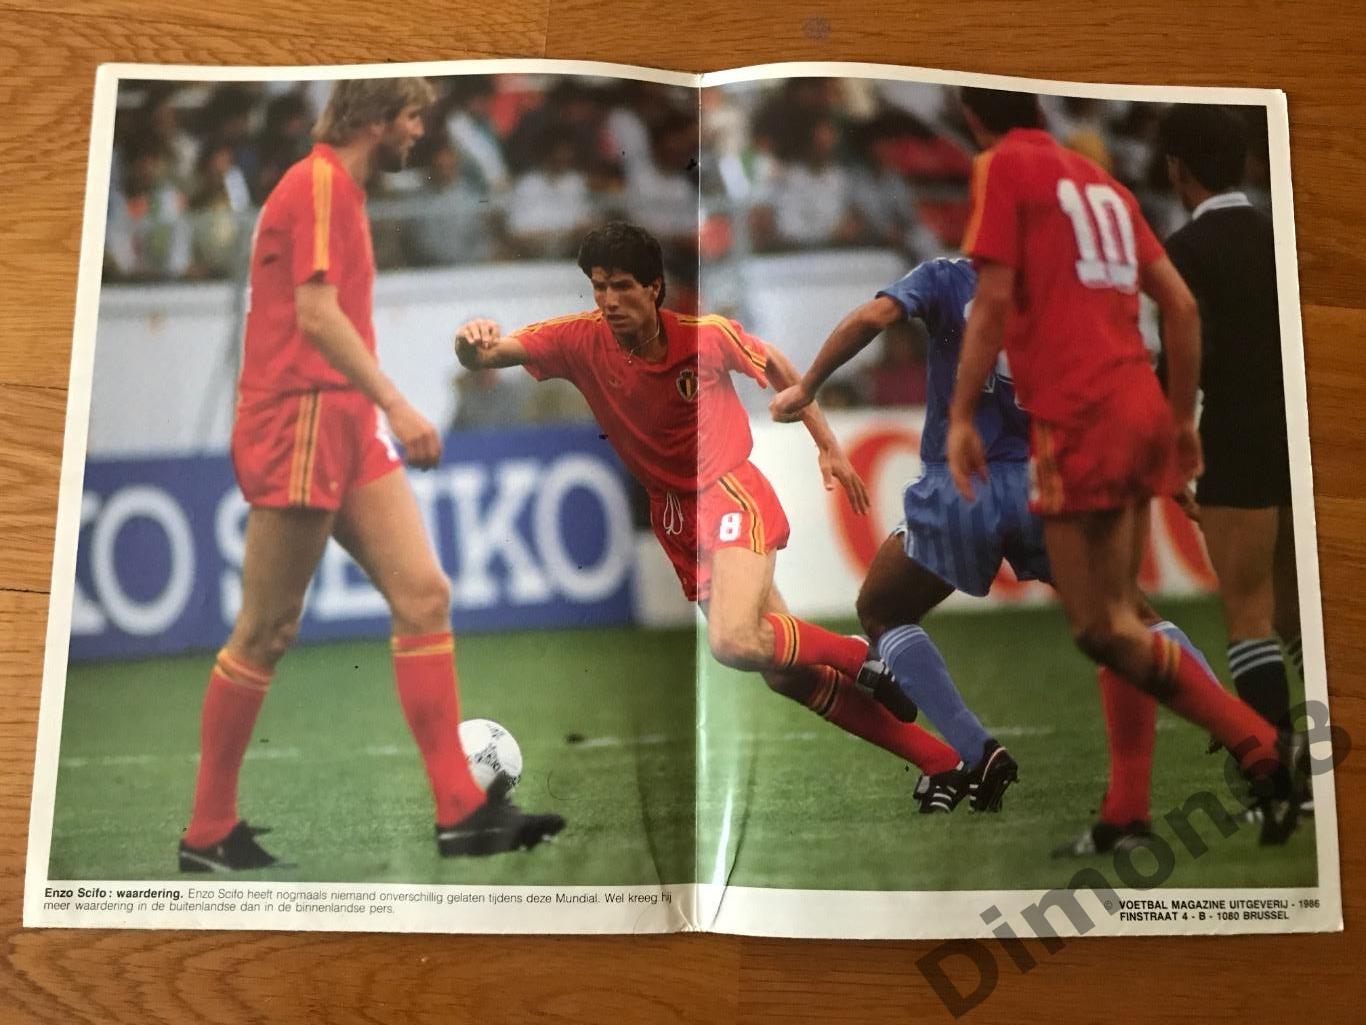 voetbal magazine mexico86г сб бельгии игровые моменты постеры 1